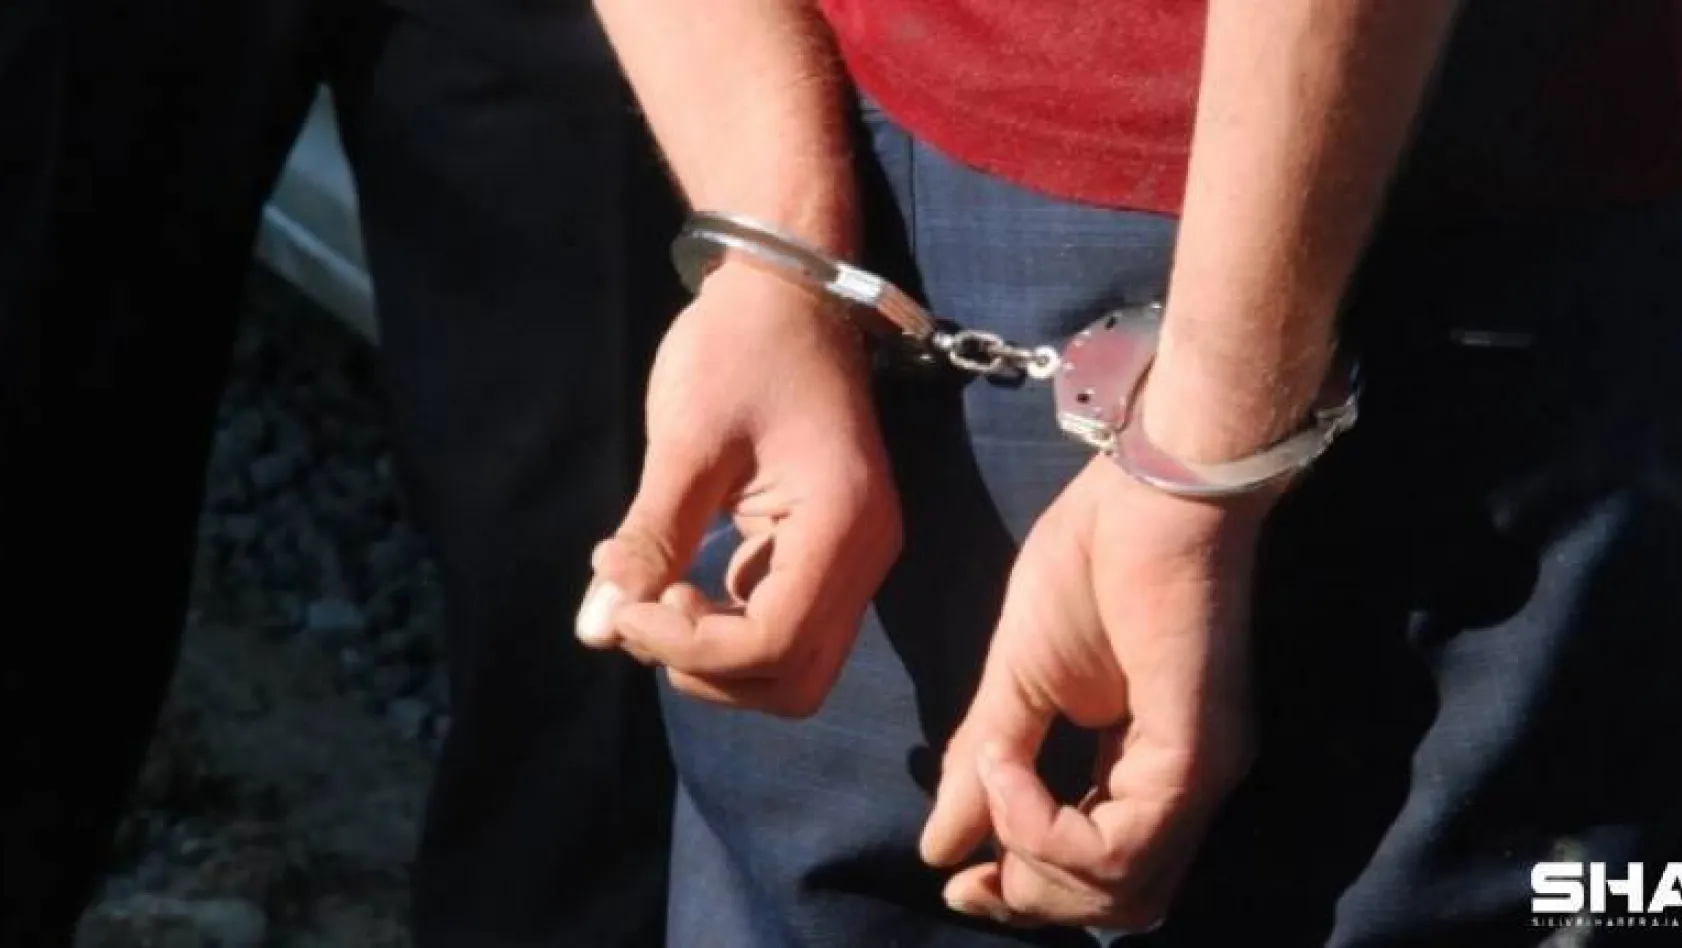 Hücre evlerinde yakalanan 17 FETÖ şüphelisi serbest kalırken, 13 şüpheli tutuklandı